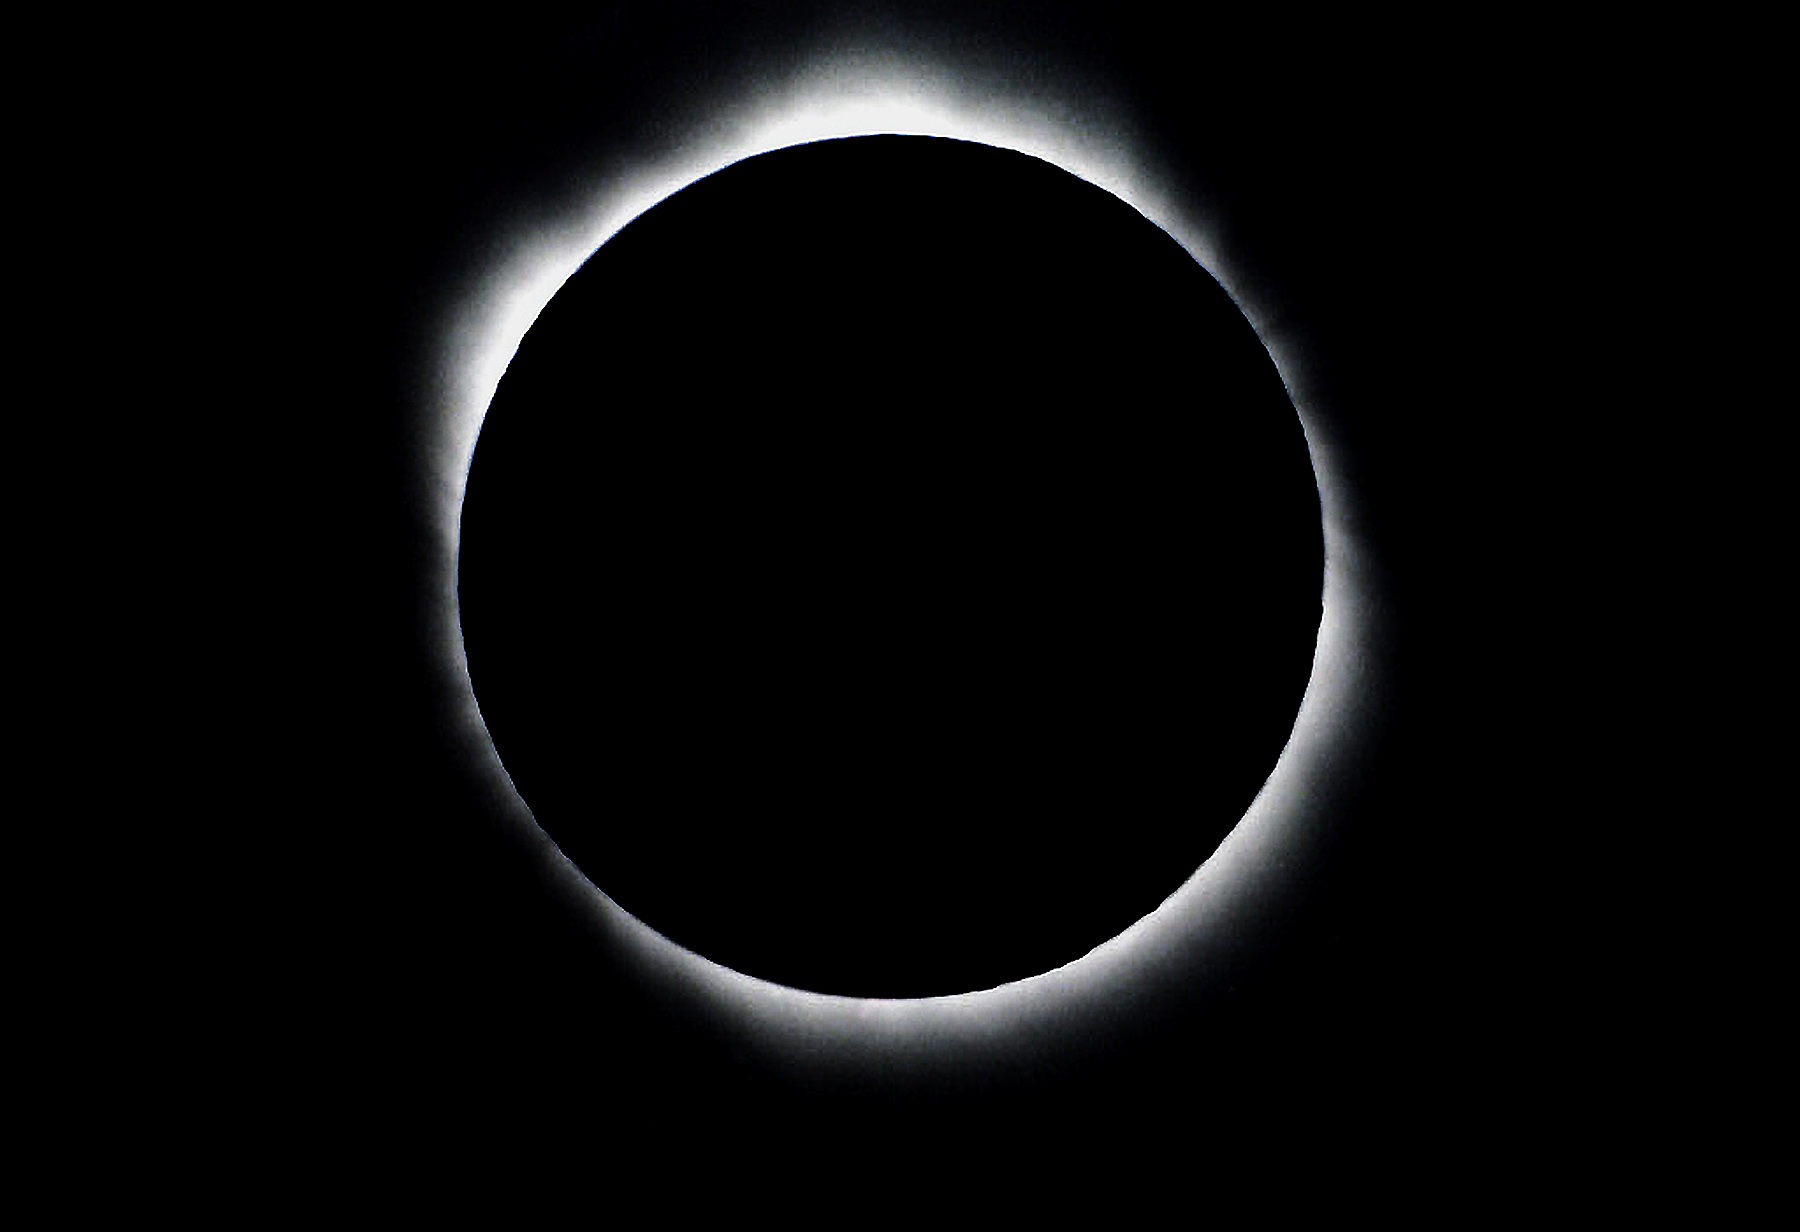 Eclipse 1998 - A53 - Corona